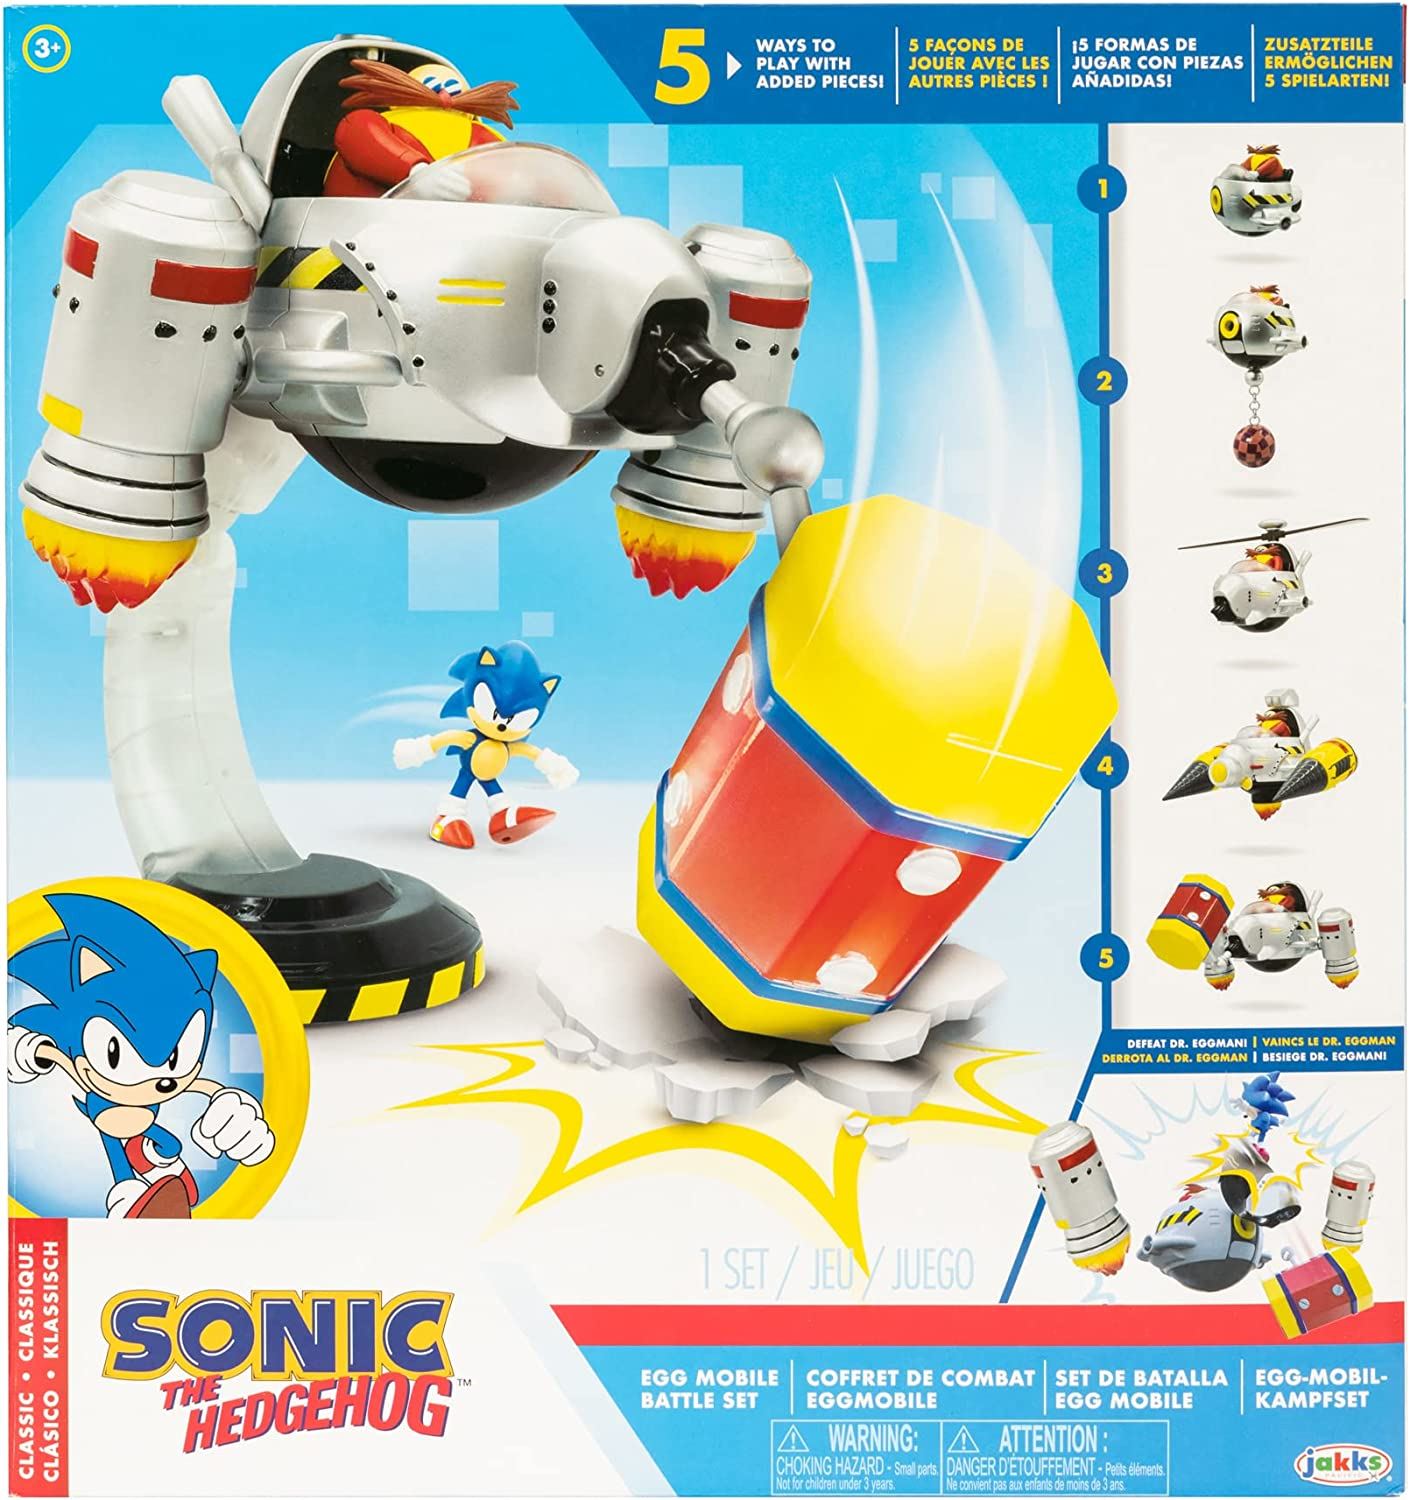 Máscara Sonic La Película + Una Figura Sonic Boom Juguete